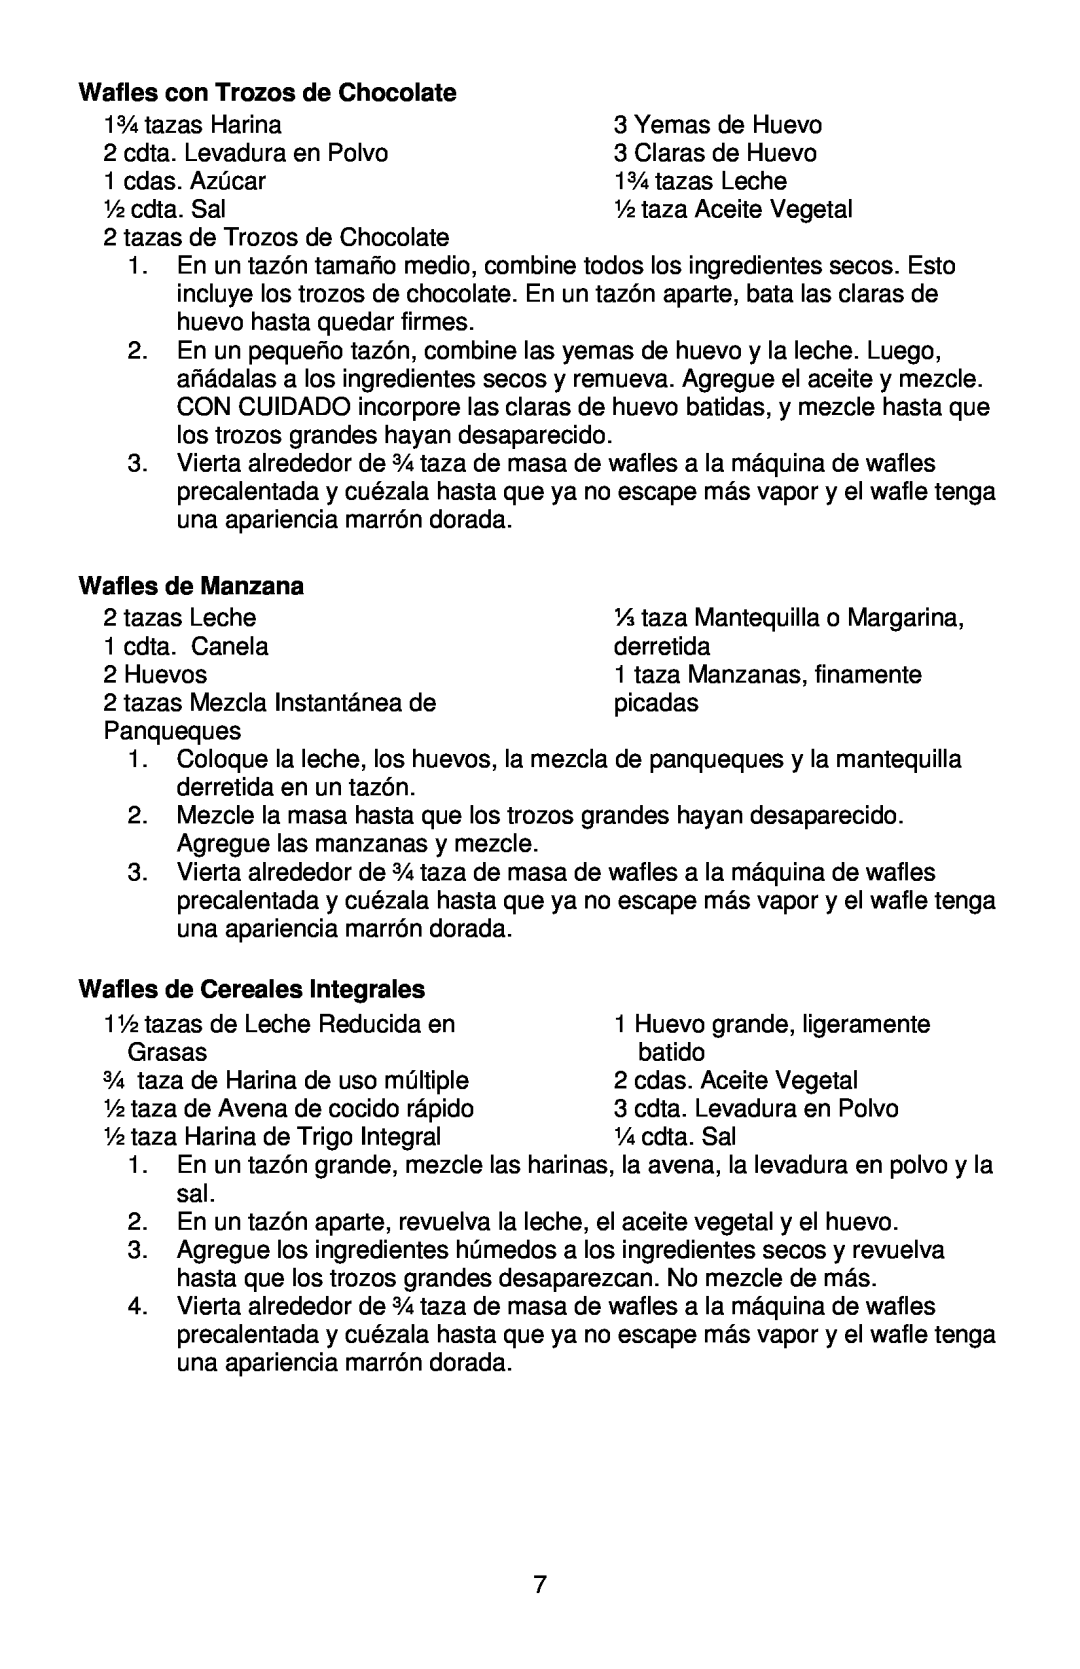 West Bend 6201 instruction manual Wafles con Trozos de Chocolate, Wafles de Manzana, Wafles de Cereales Integrales 